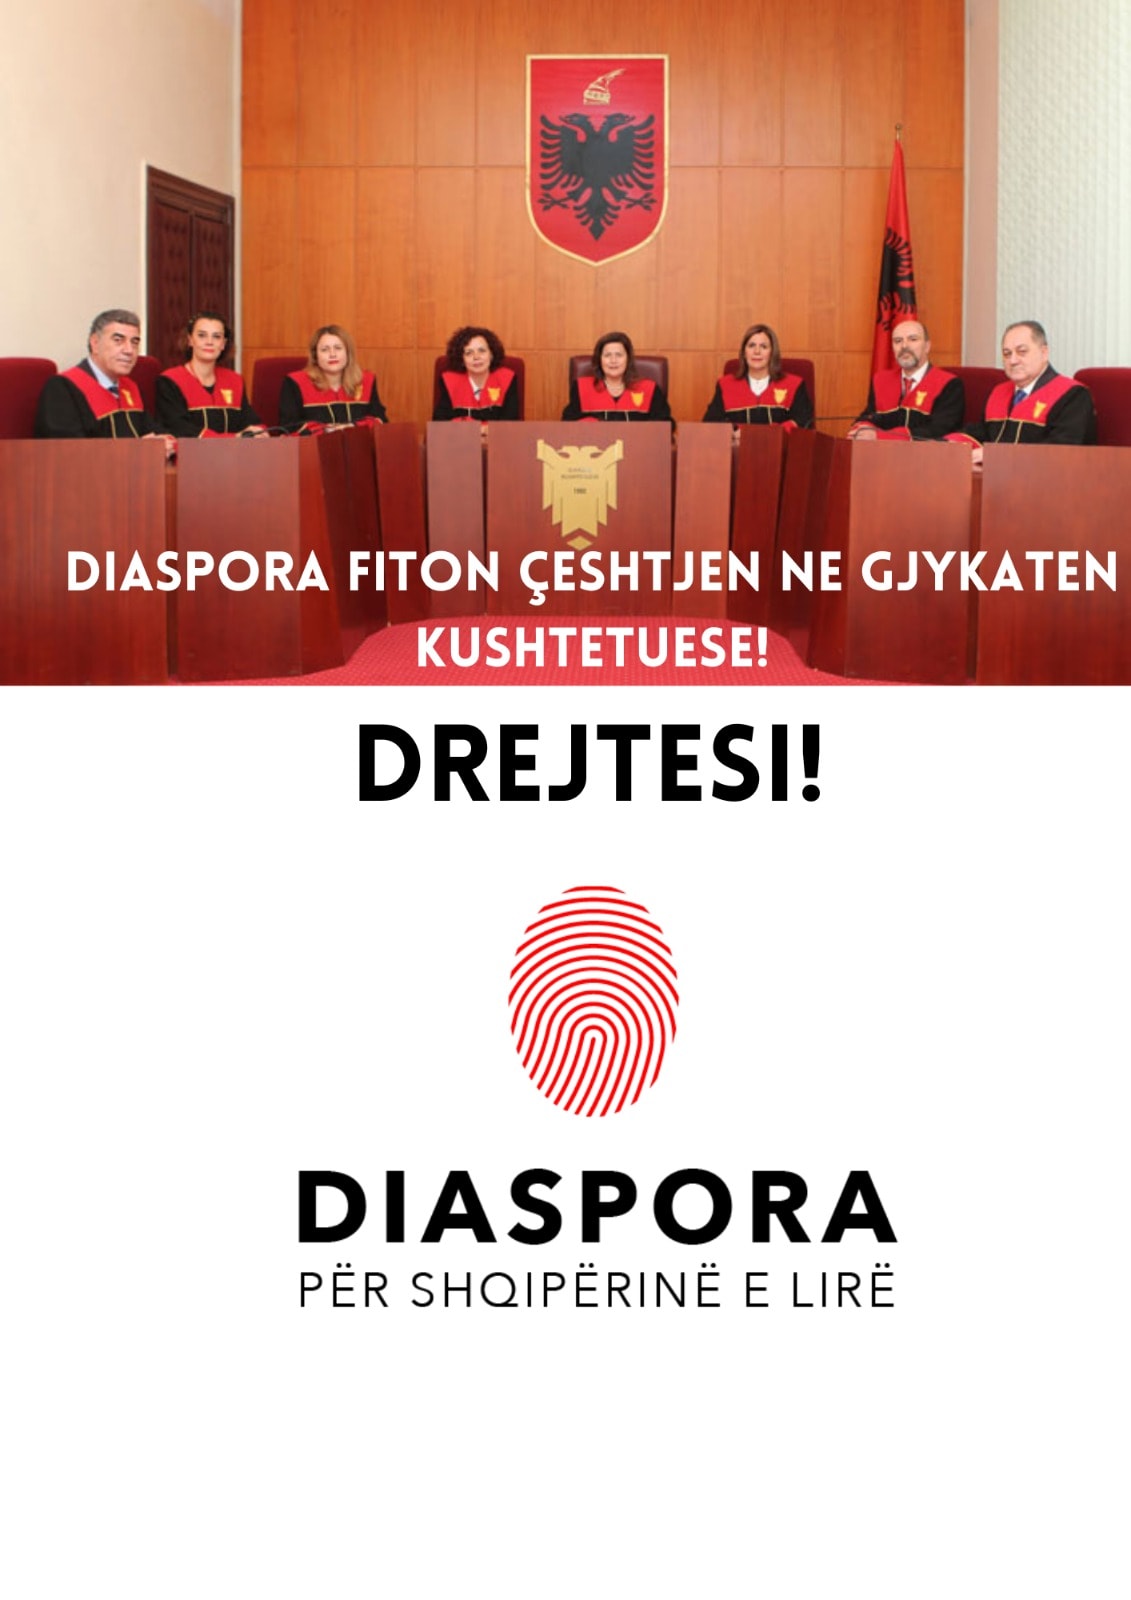 Diaspora për Shqipërinë e Lirë fiton në Gjykatën Kushtetuese kundër shtetit shqiptar për cënimin e të drejtës së votës së Diasporës